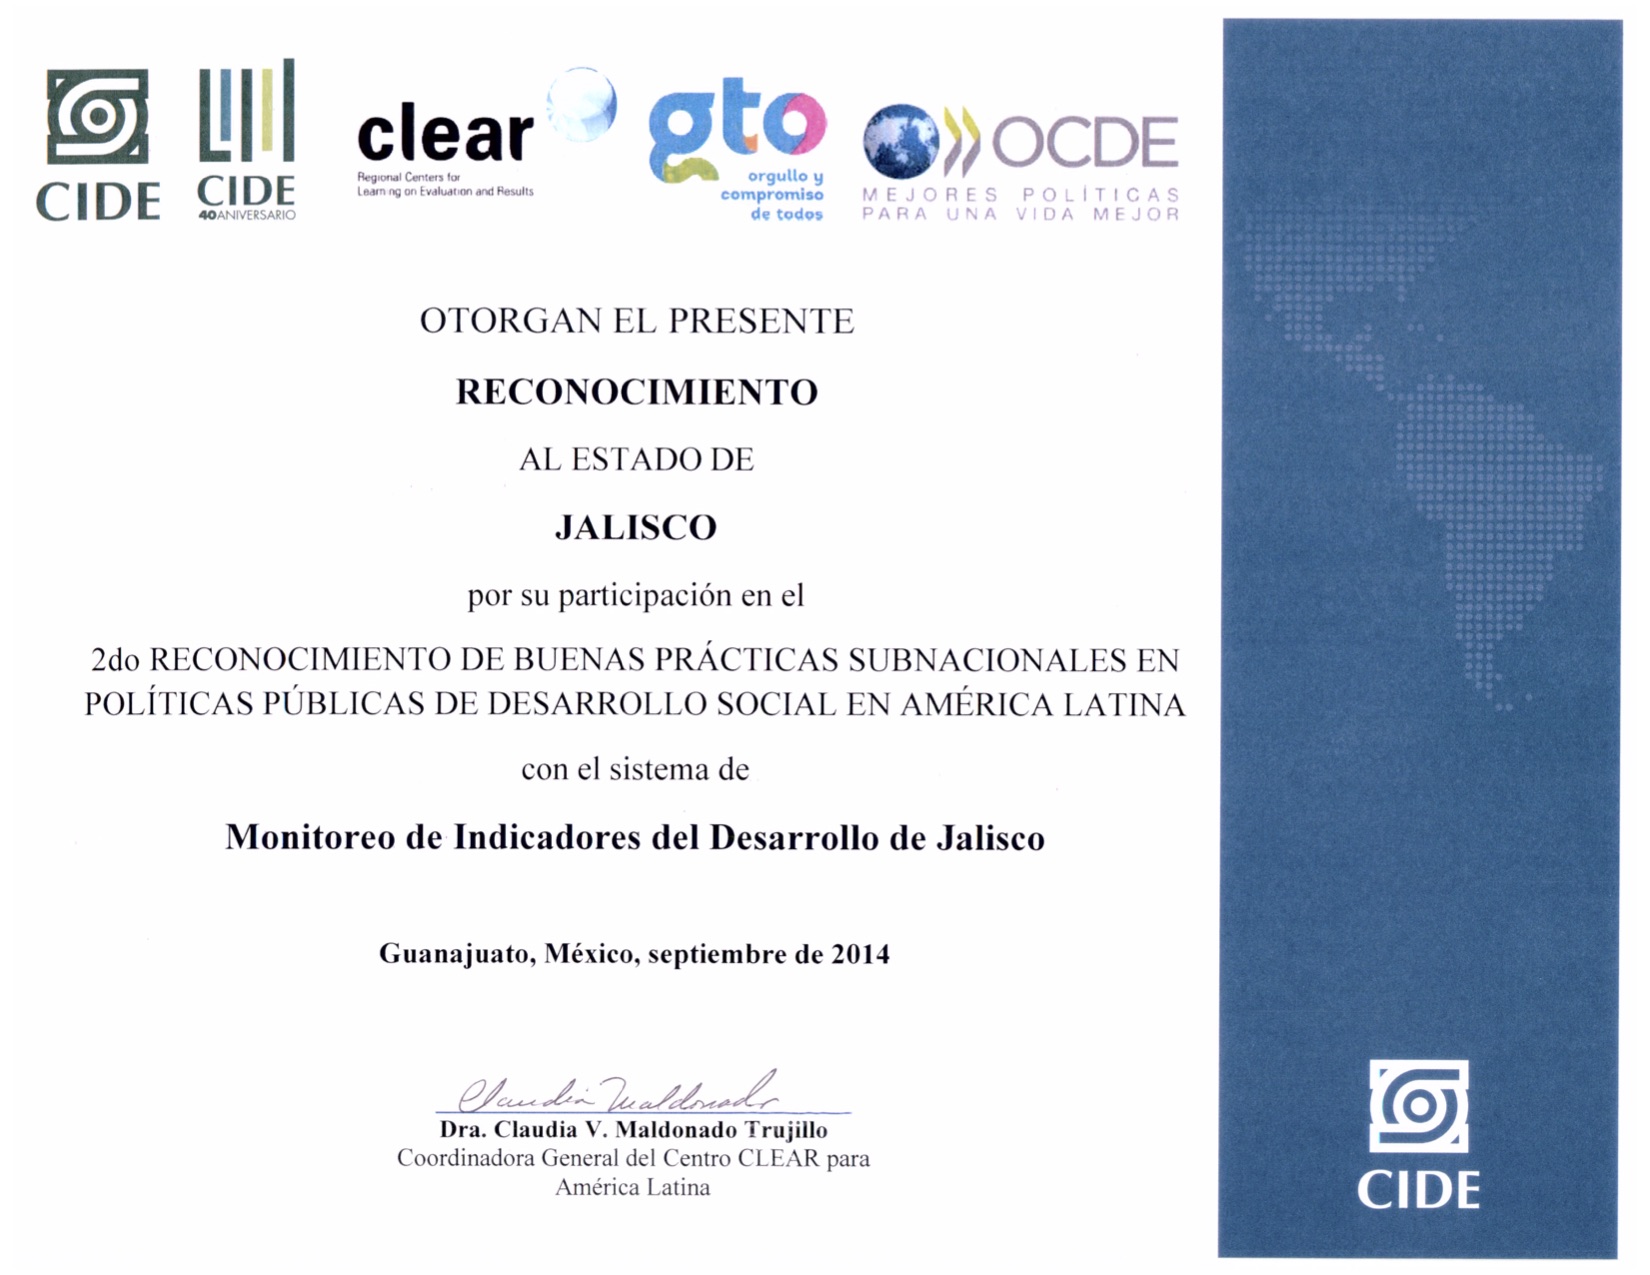 Monitoreo de Indicadores del Desarrollo de Jalisco (MIDE Jalisco), mención honorífica como buena práctica subnacional en Políticas Públicas de Desarrollo Social en América Latina